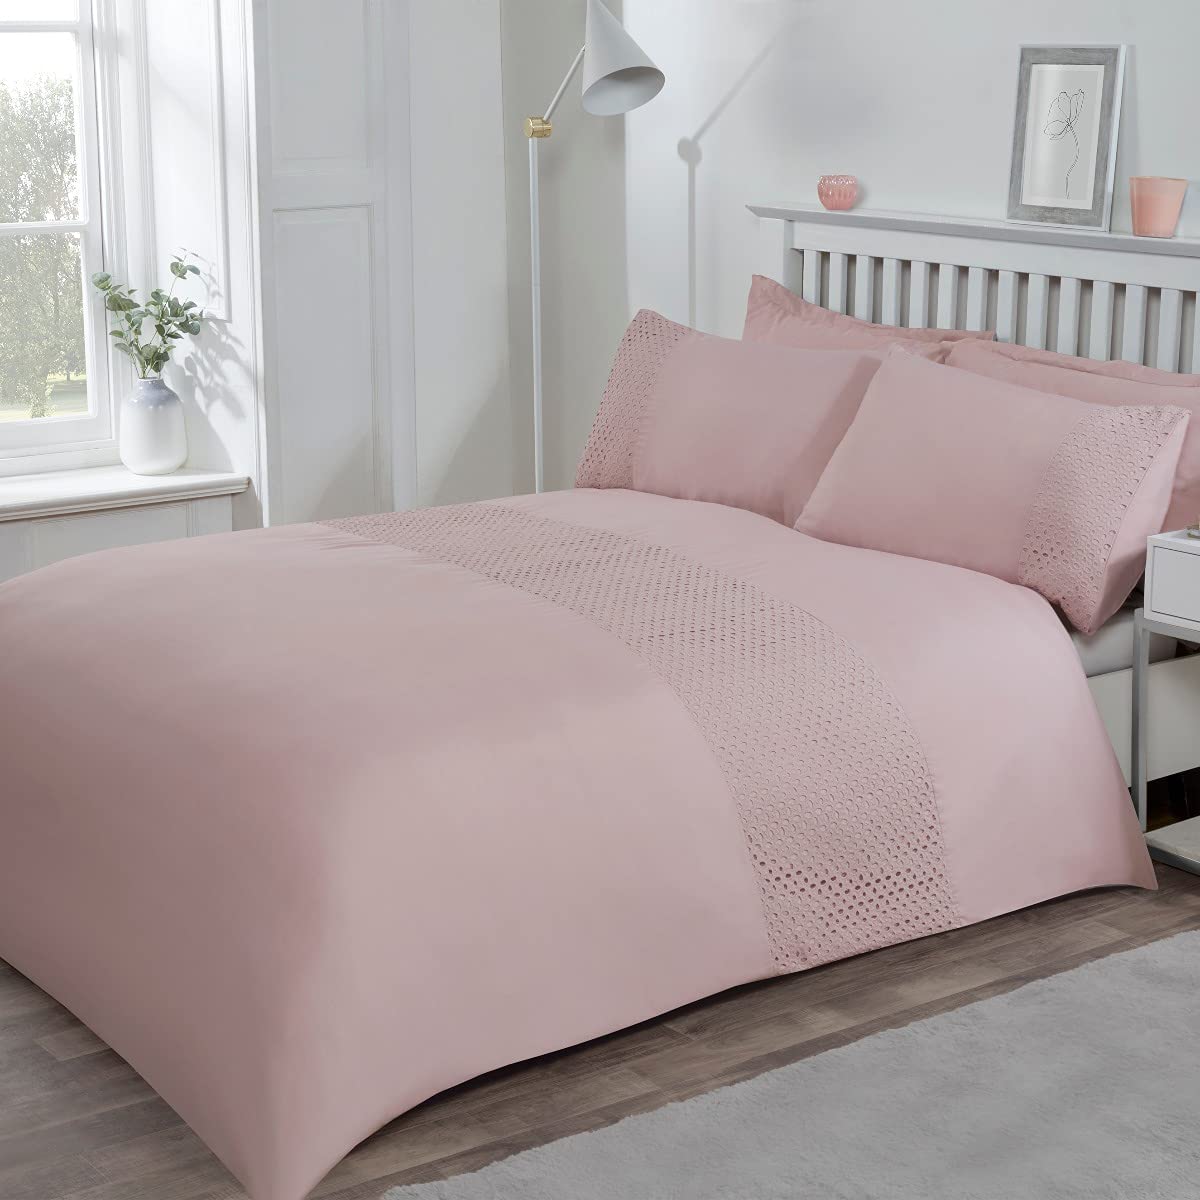 Lace Panel - Duvet Cover & Pillowcase Set